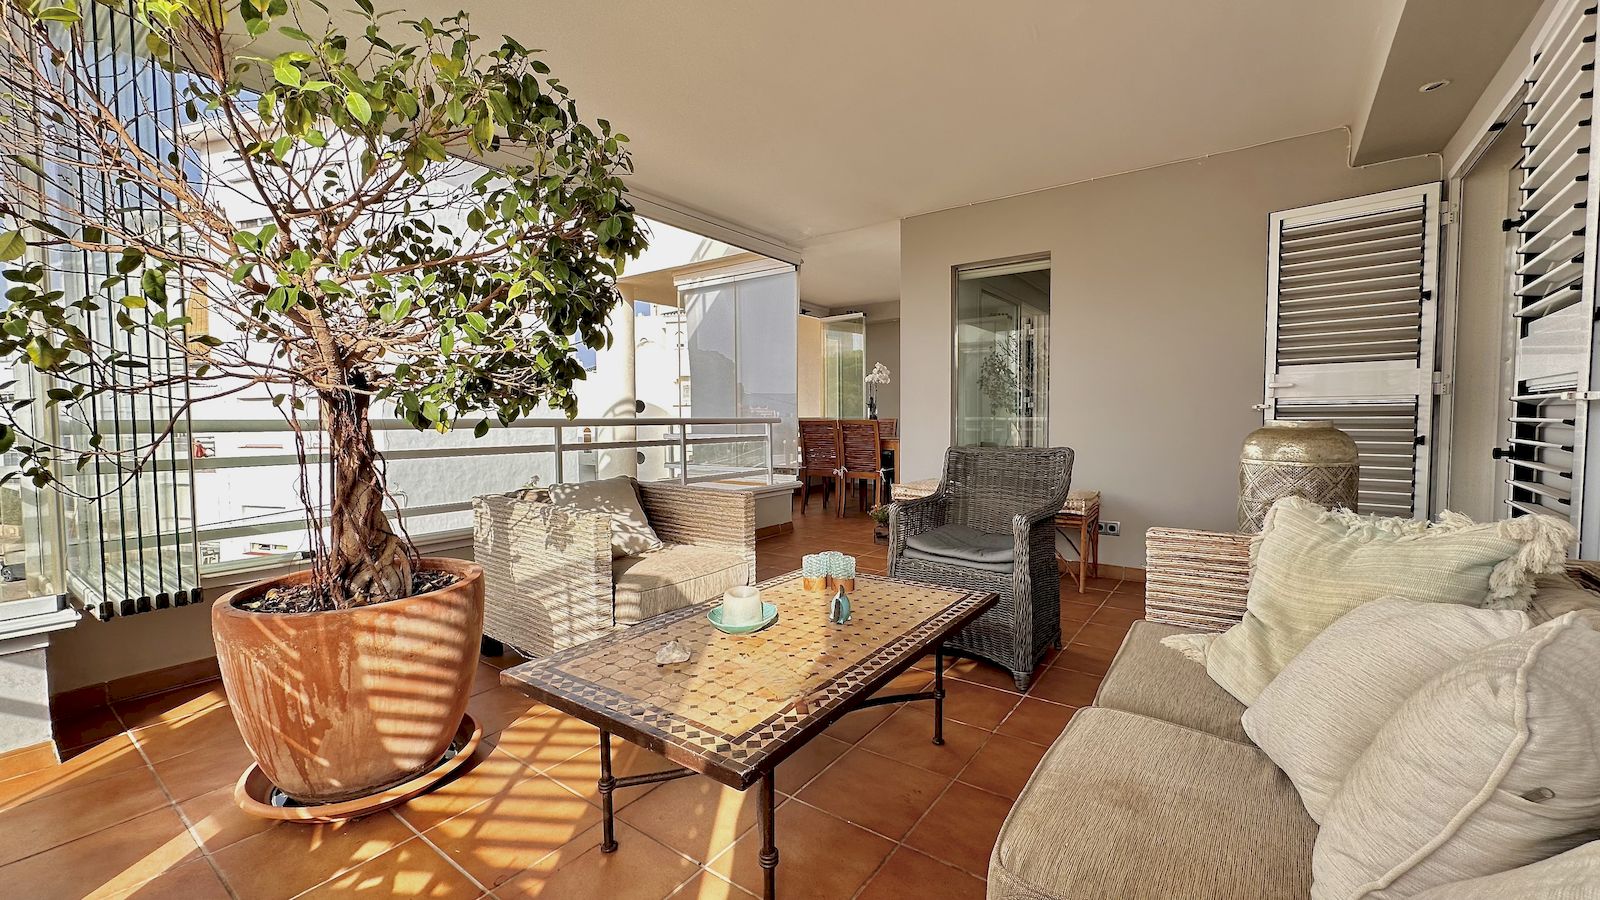 Appartement en duplex à louer avec vue sur la mer à Playa del Arenal - Javea